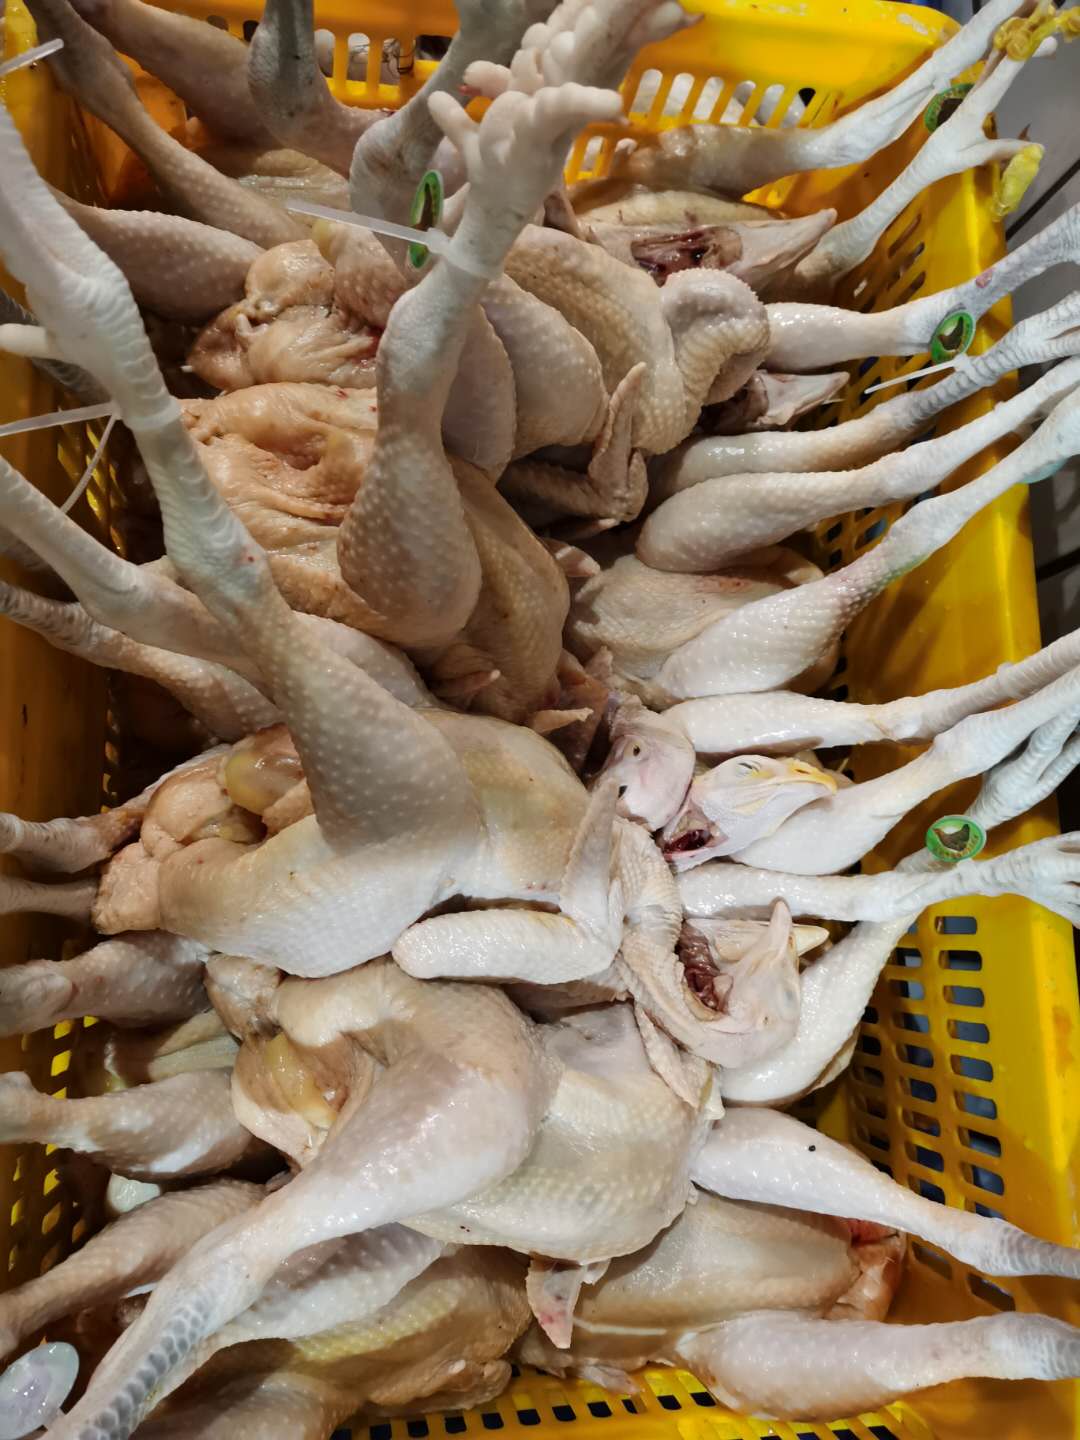 长安乌沙新鲜肉类配送供应商 东莞市联旺膳食管理服务有限公司